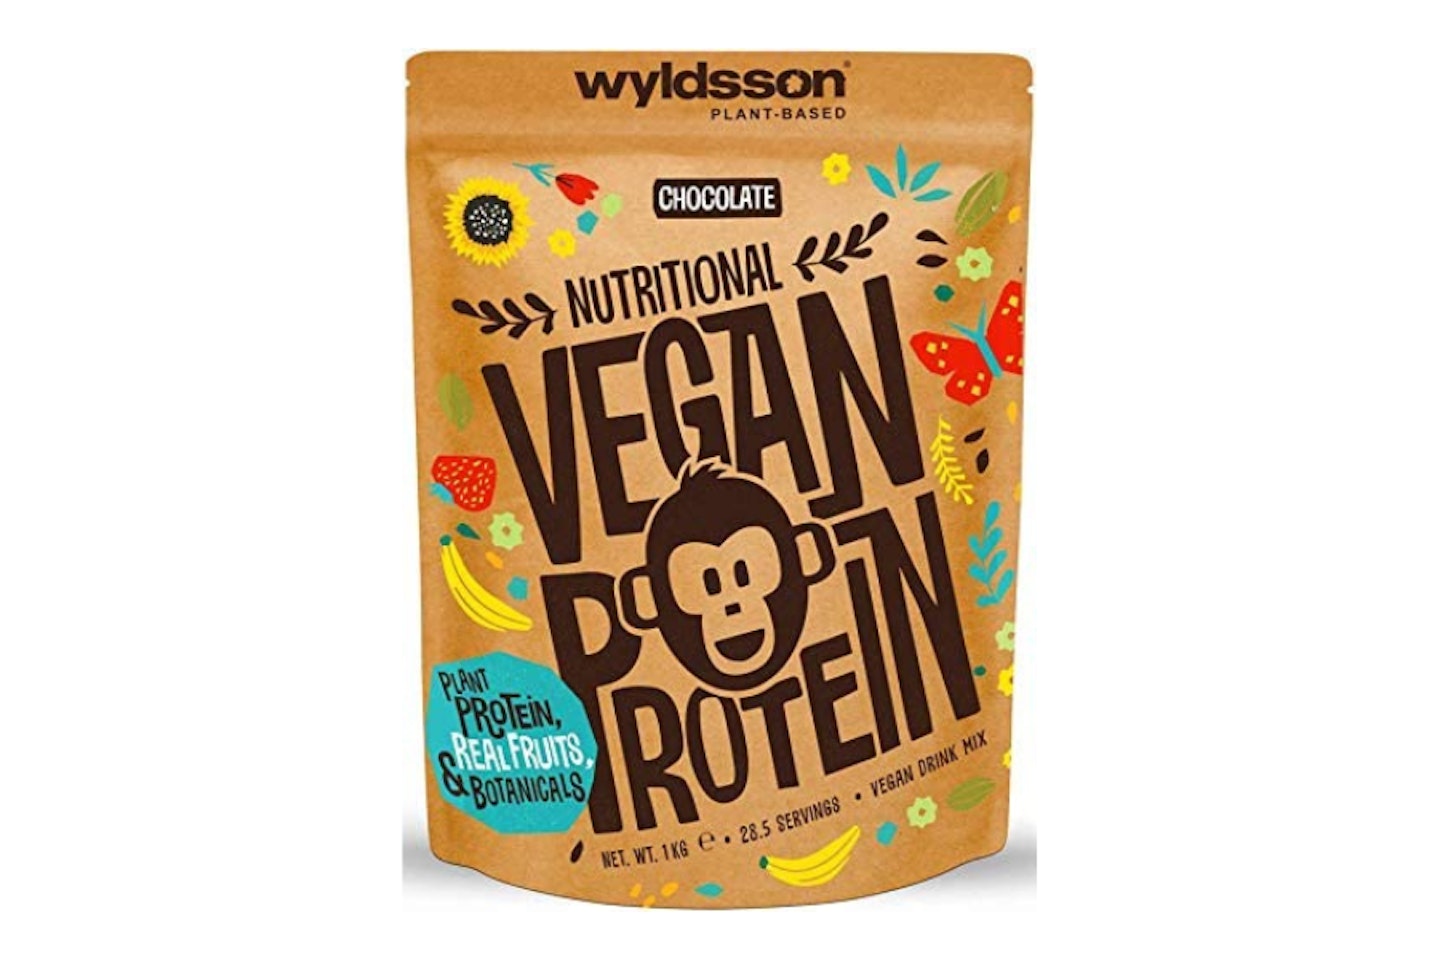 Vegan Protein Powders (28 Servings, 1kg) - Chocolate